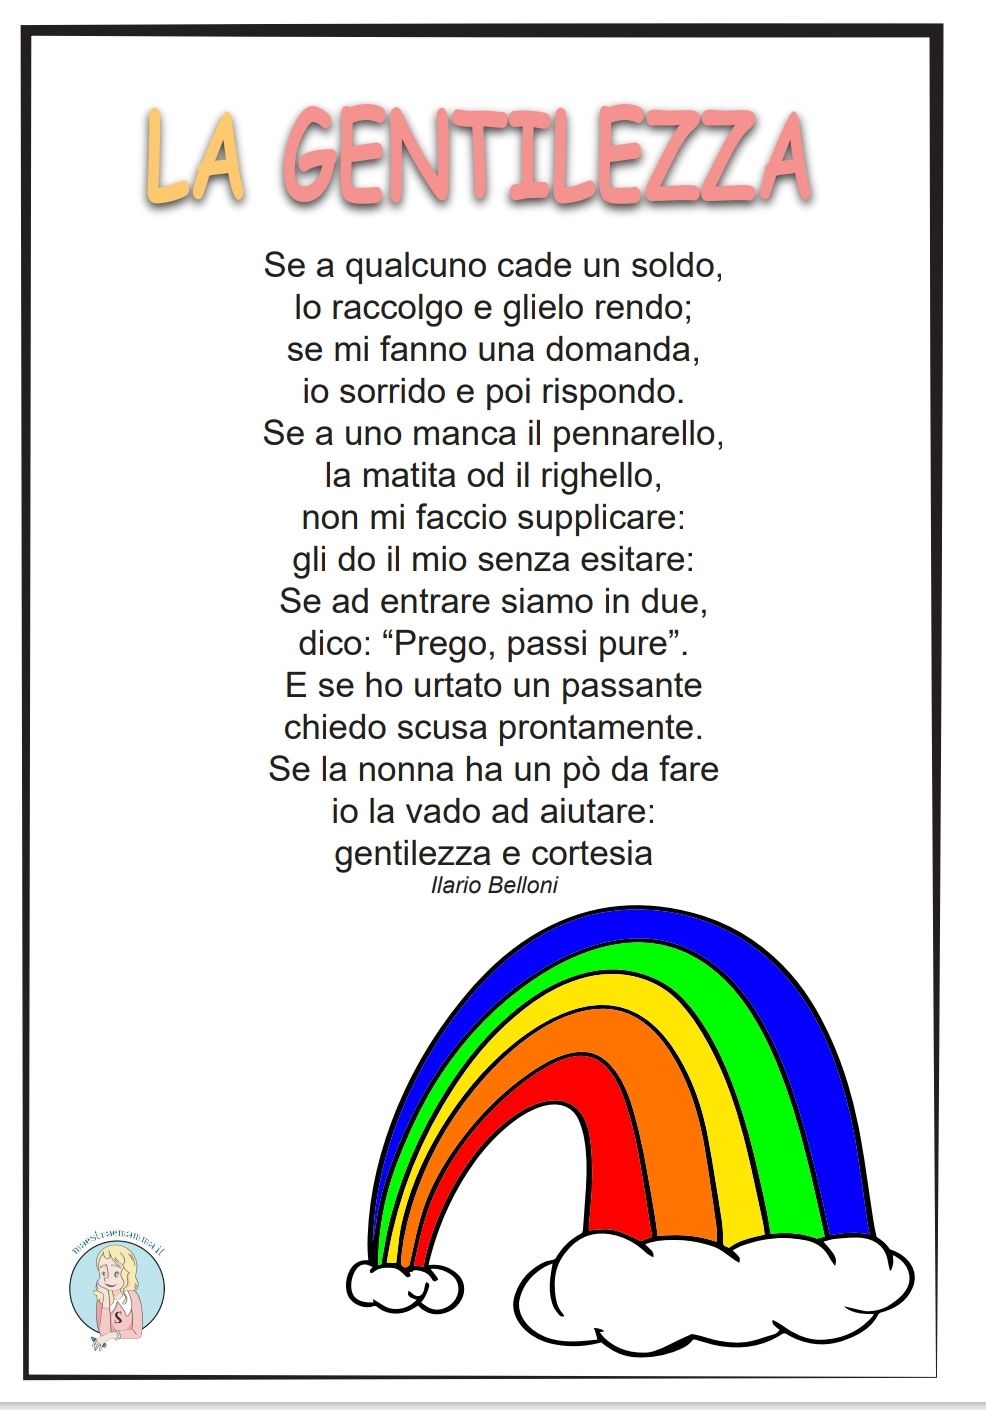 "La gentilezza" - poesia di Ilario Belloni 13 novembre settimana della gentilezza